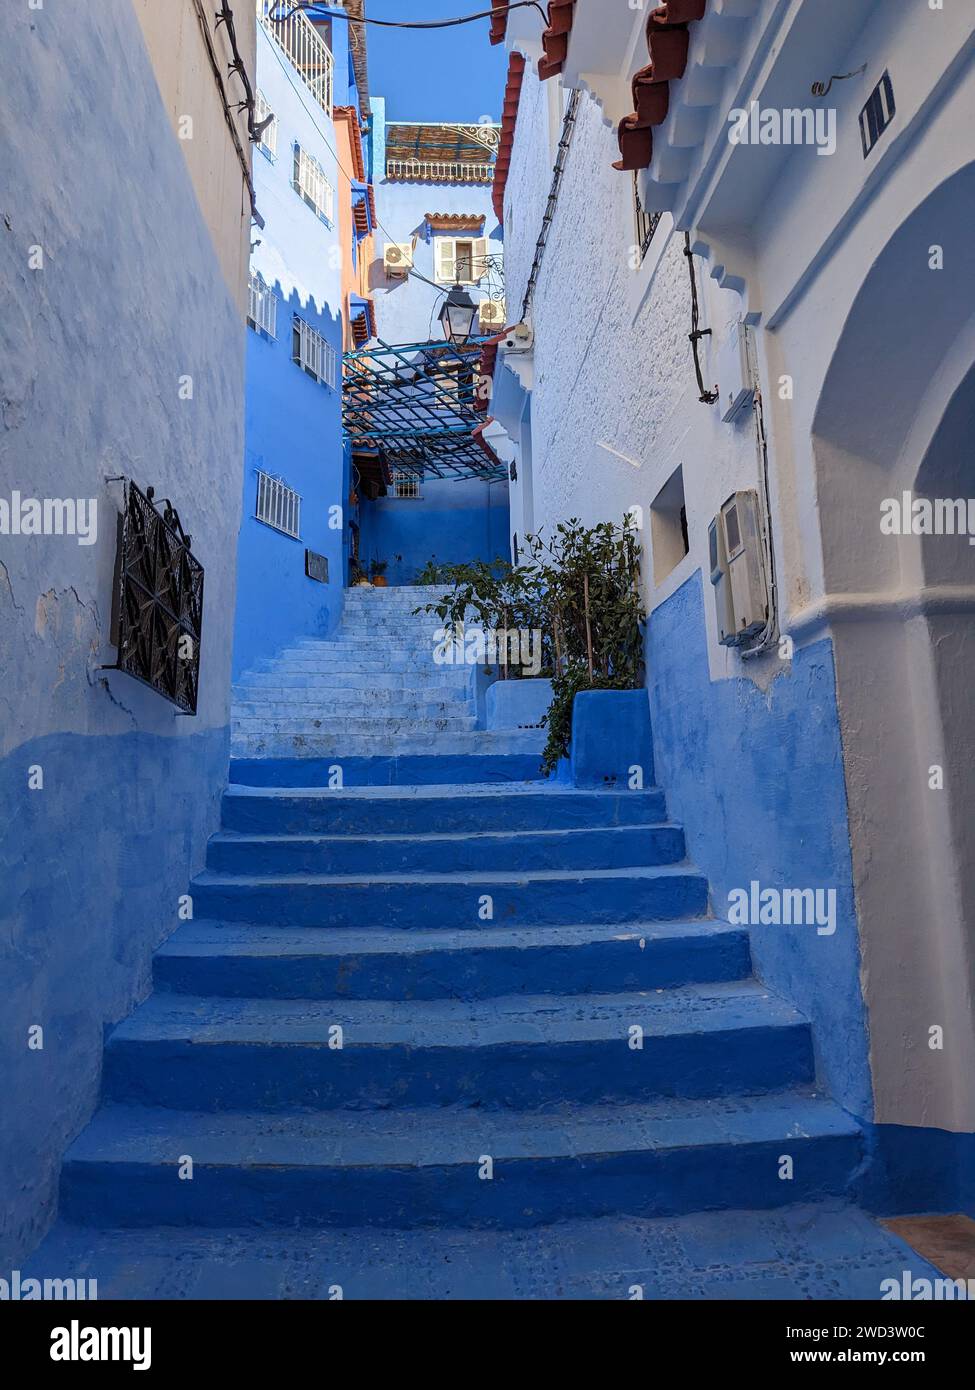 Fantastischer Blick auf die Straßen in der blauen Stadt Chefchaouen. Lage: Chefchaouen, Marokko, Afrika. Künstlerisches Bild. Auch Blaue Perle genannt Stockfoto